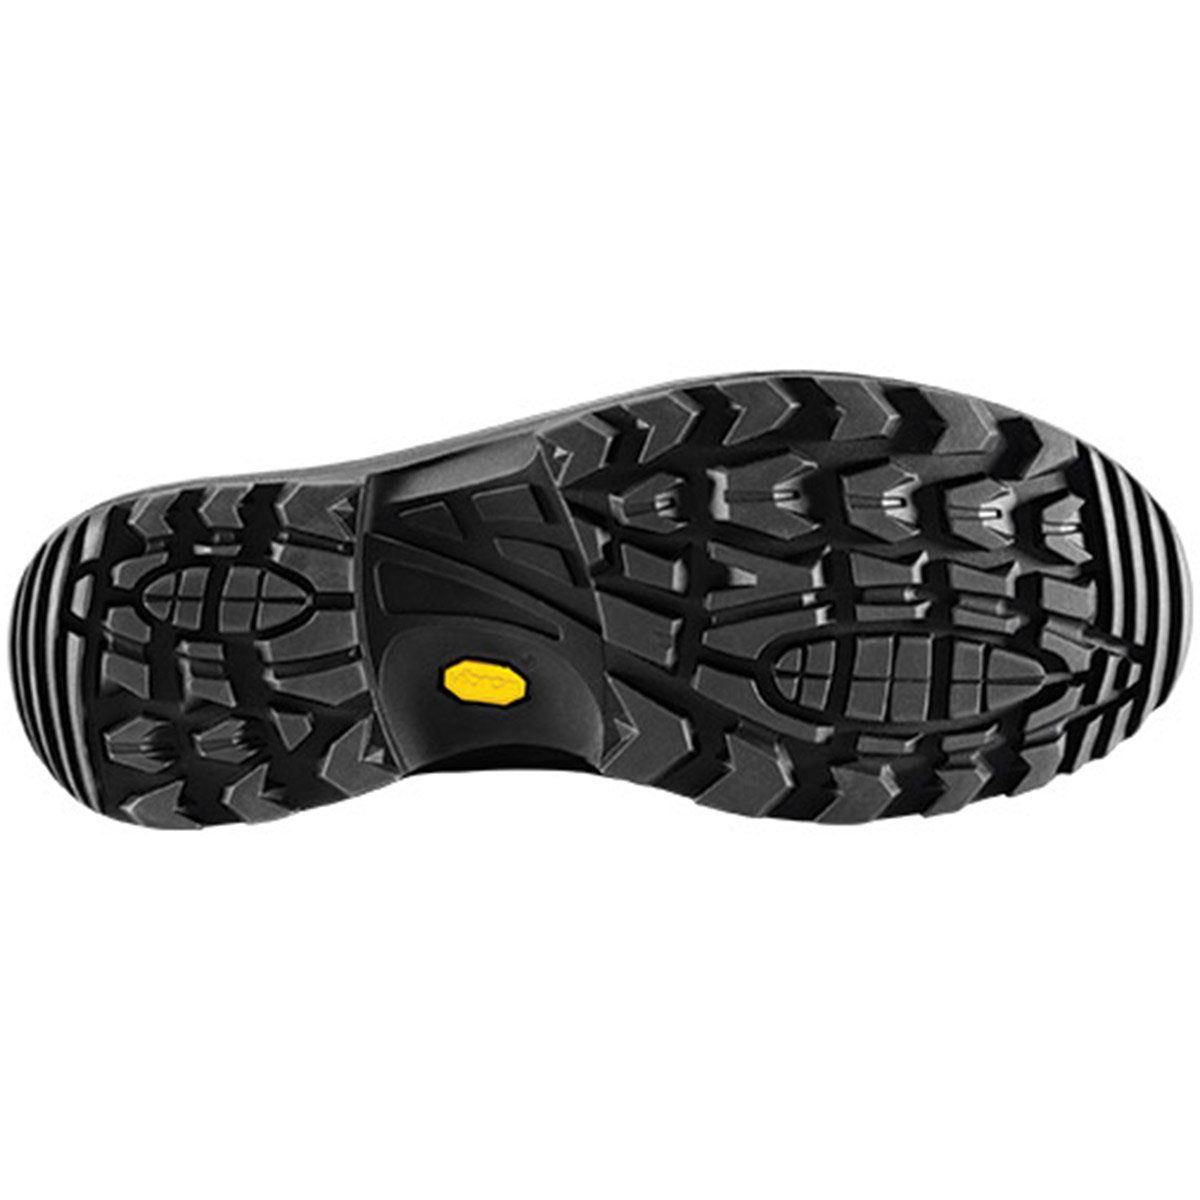 Chaussures de randonnée Renegade GTX Mid Ws Wide - Asphalt/Turquoise